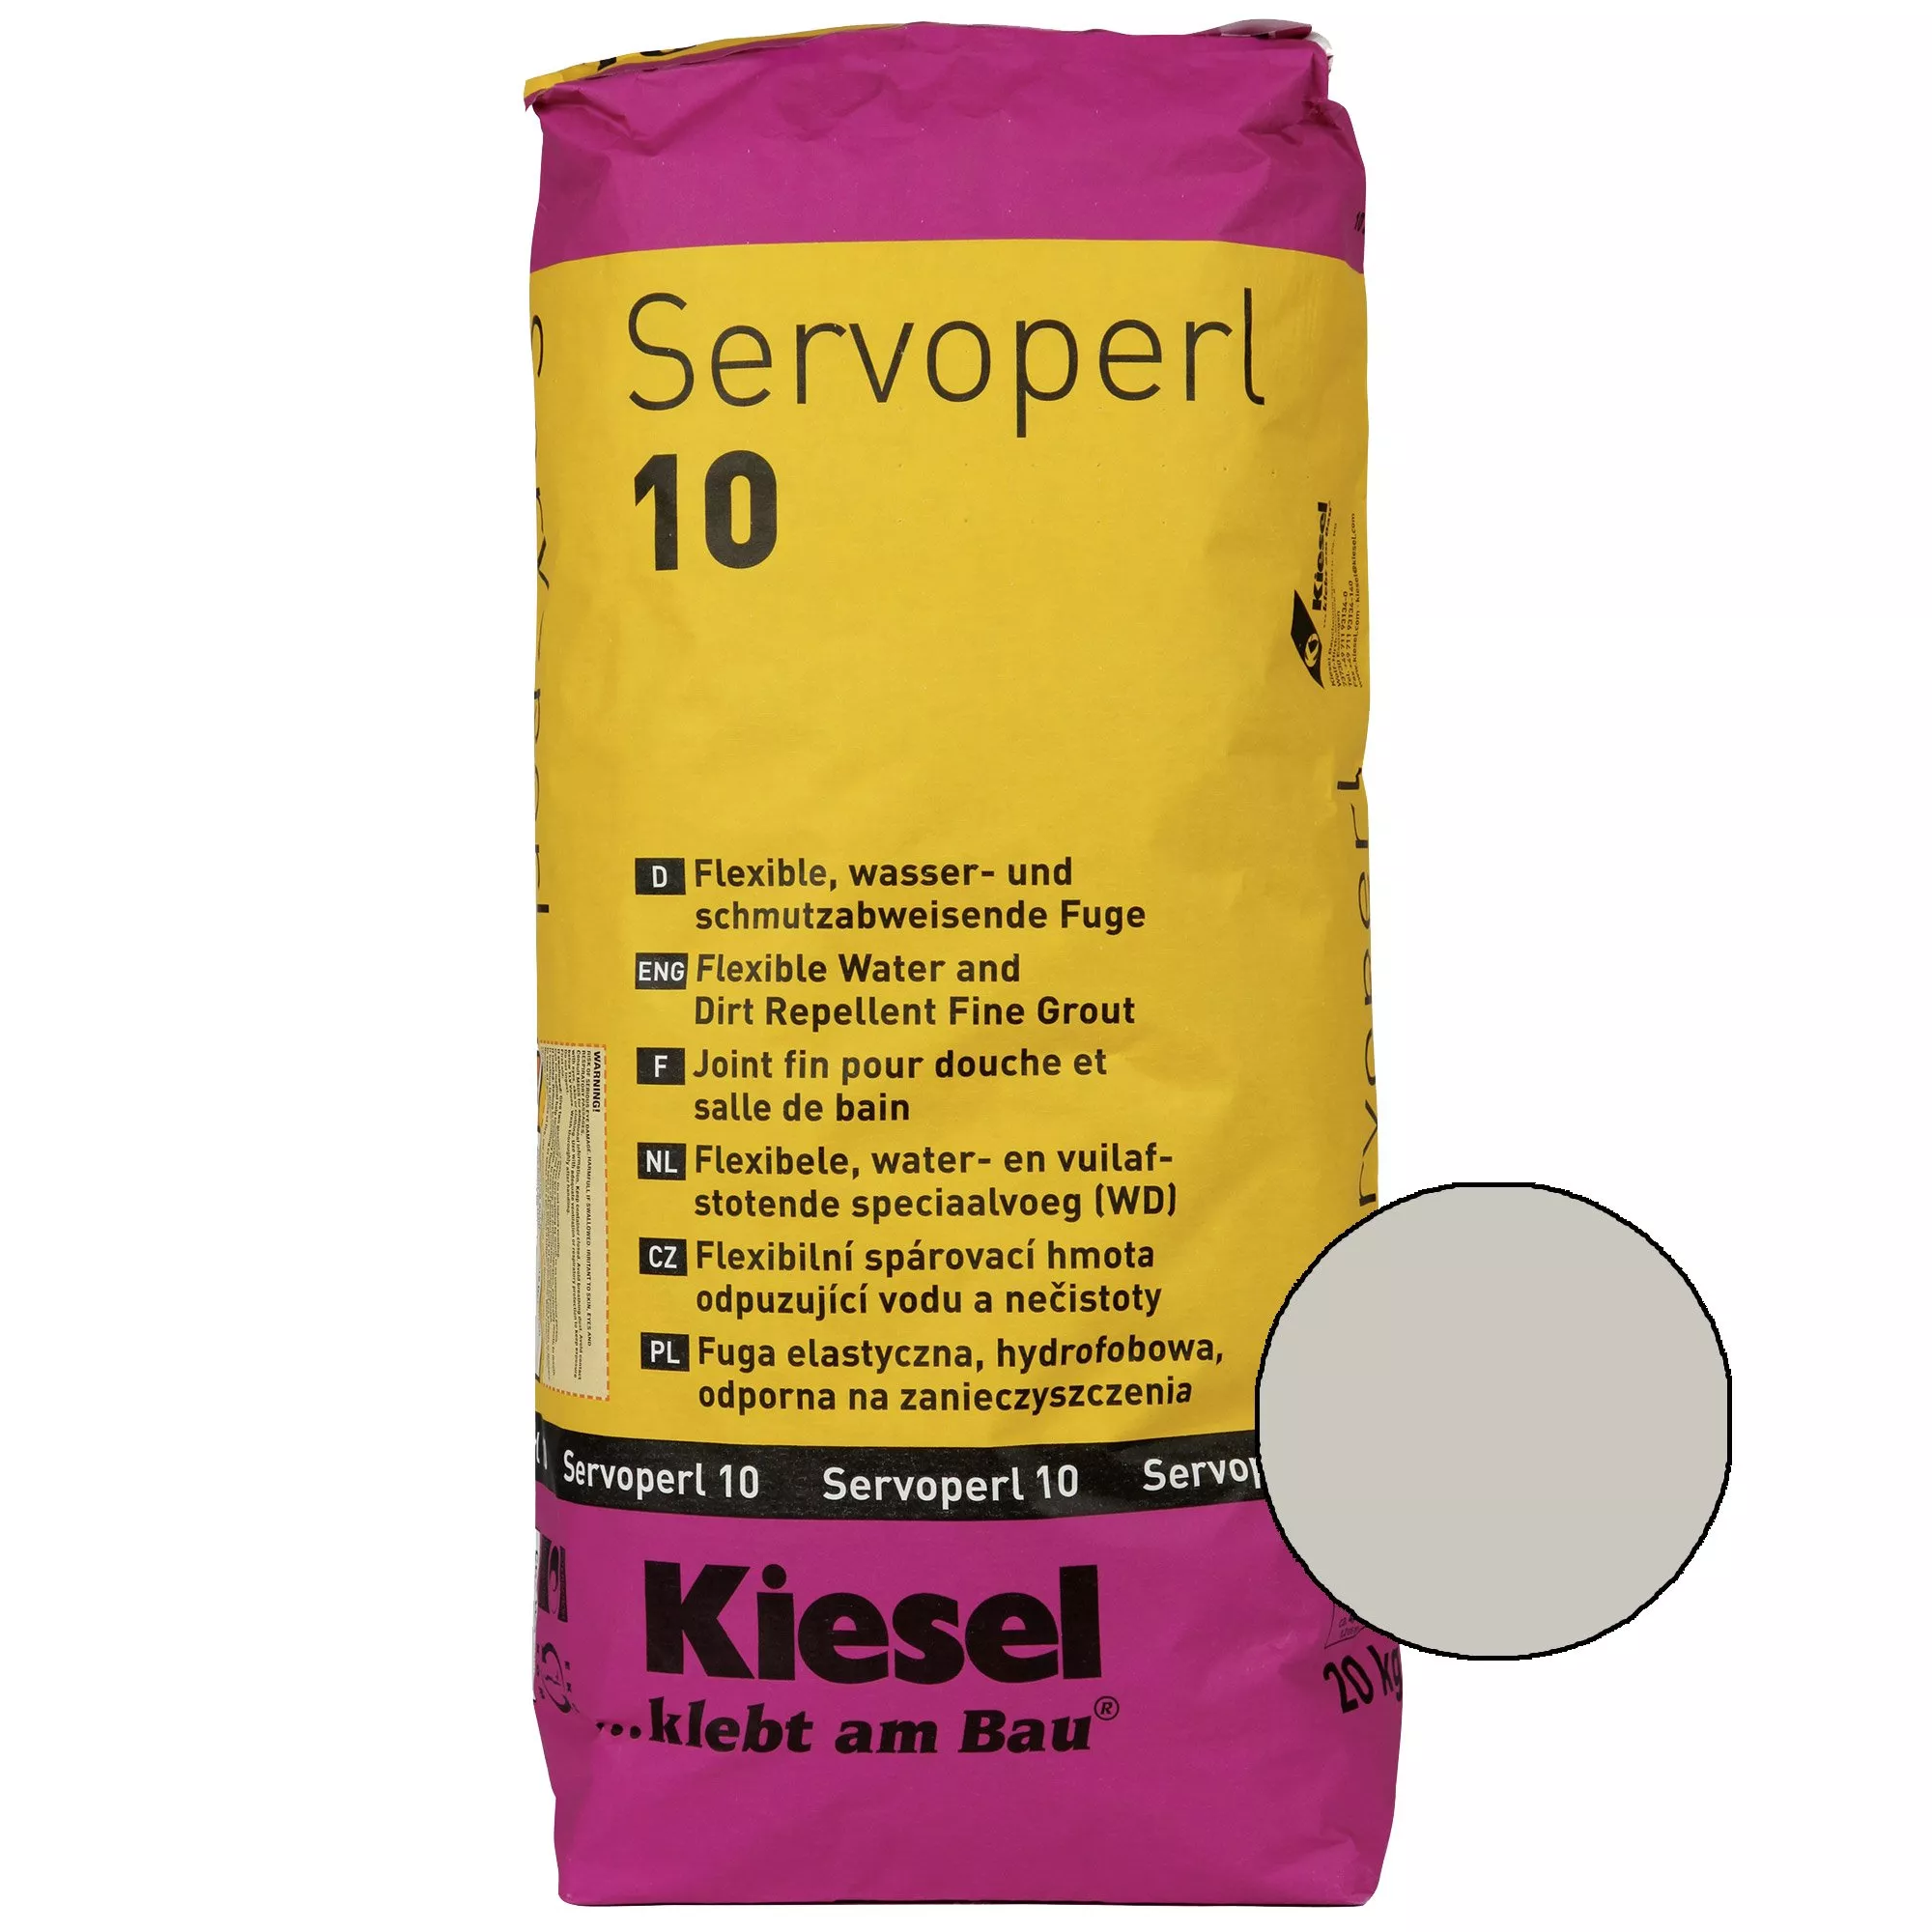 Kiesel Servoperl 10 - Flexible zementäre Fuge (20KG Silbergrau)